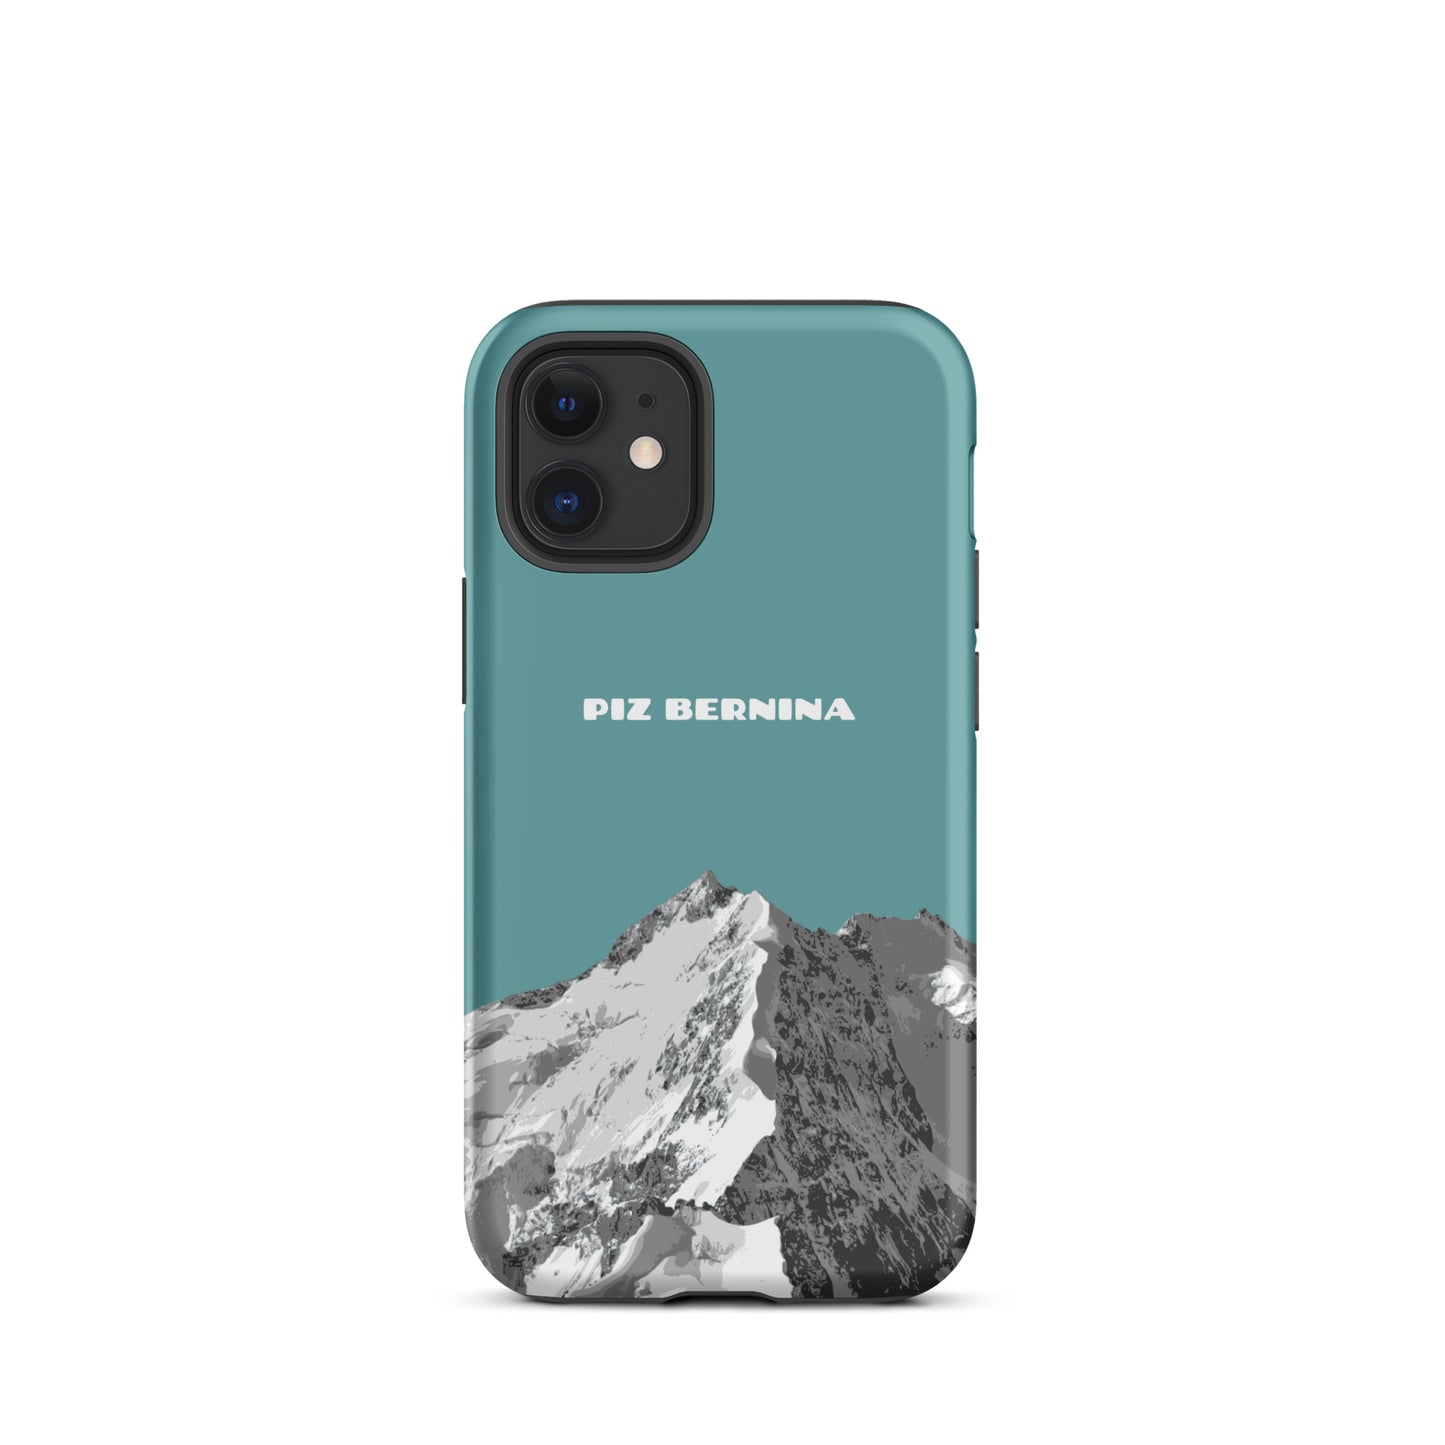 Hülle für das iPhone 12 Mini von Apple in der Farbe Kadettenblau, dass den Piz Bernina in Graubünden zeigt.